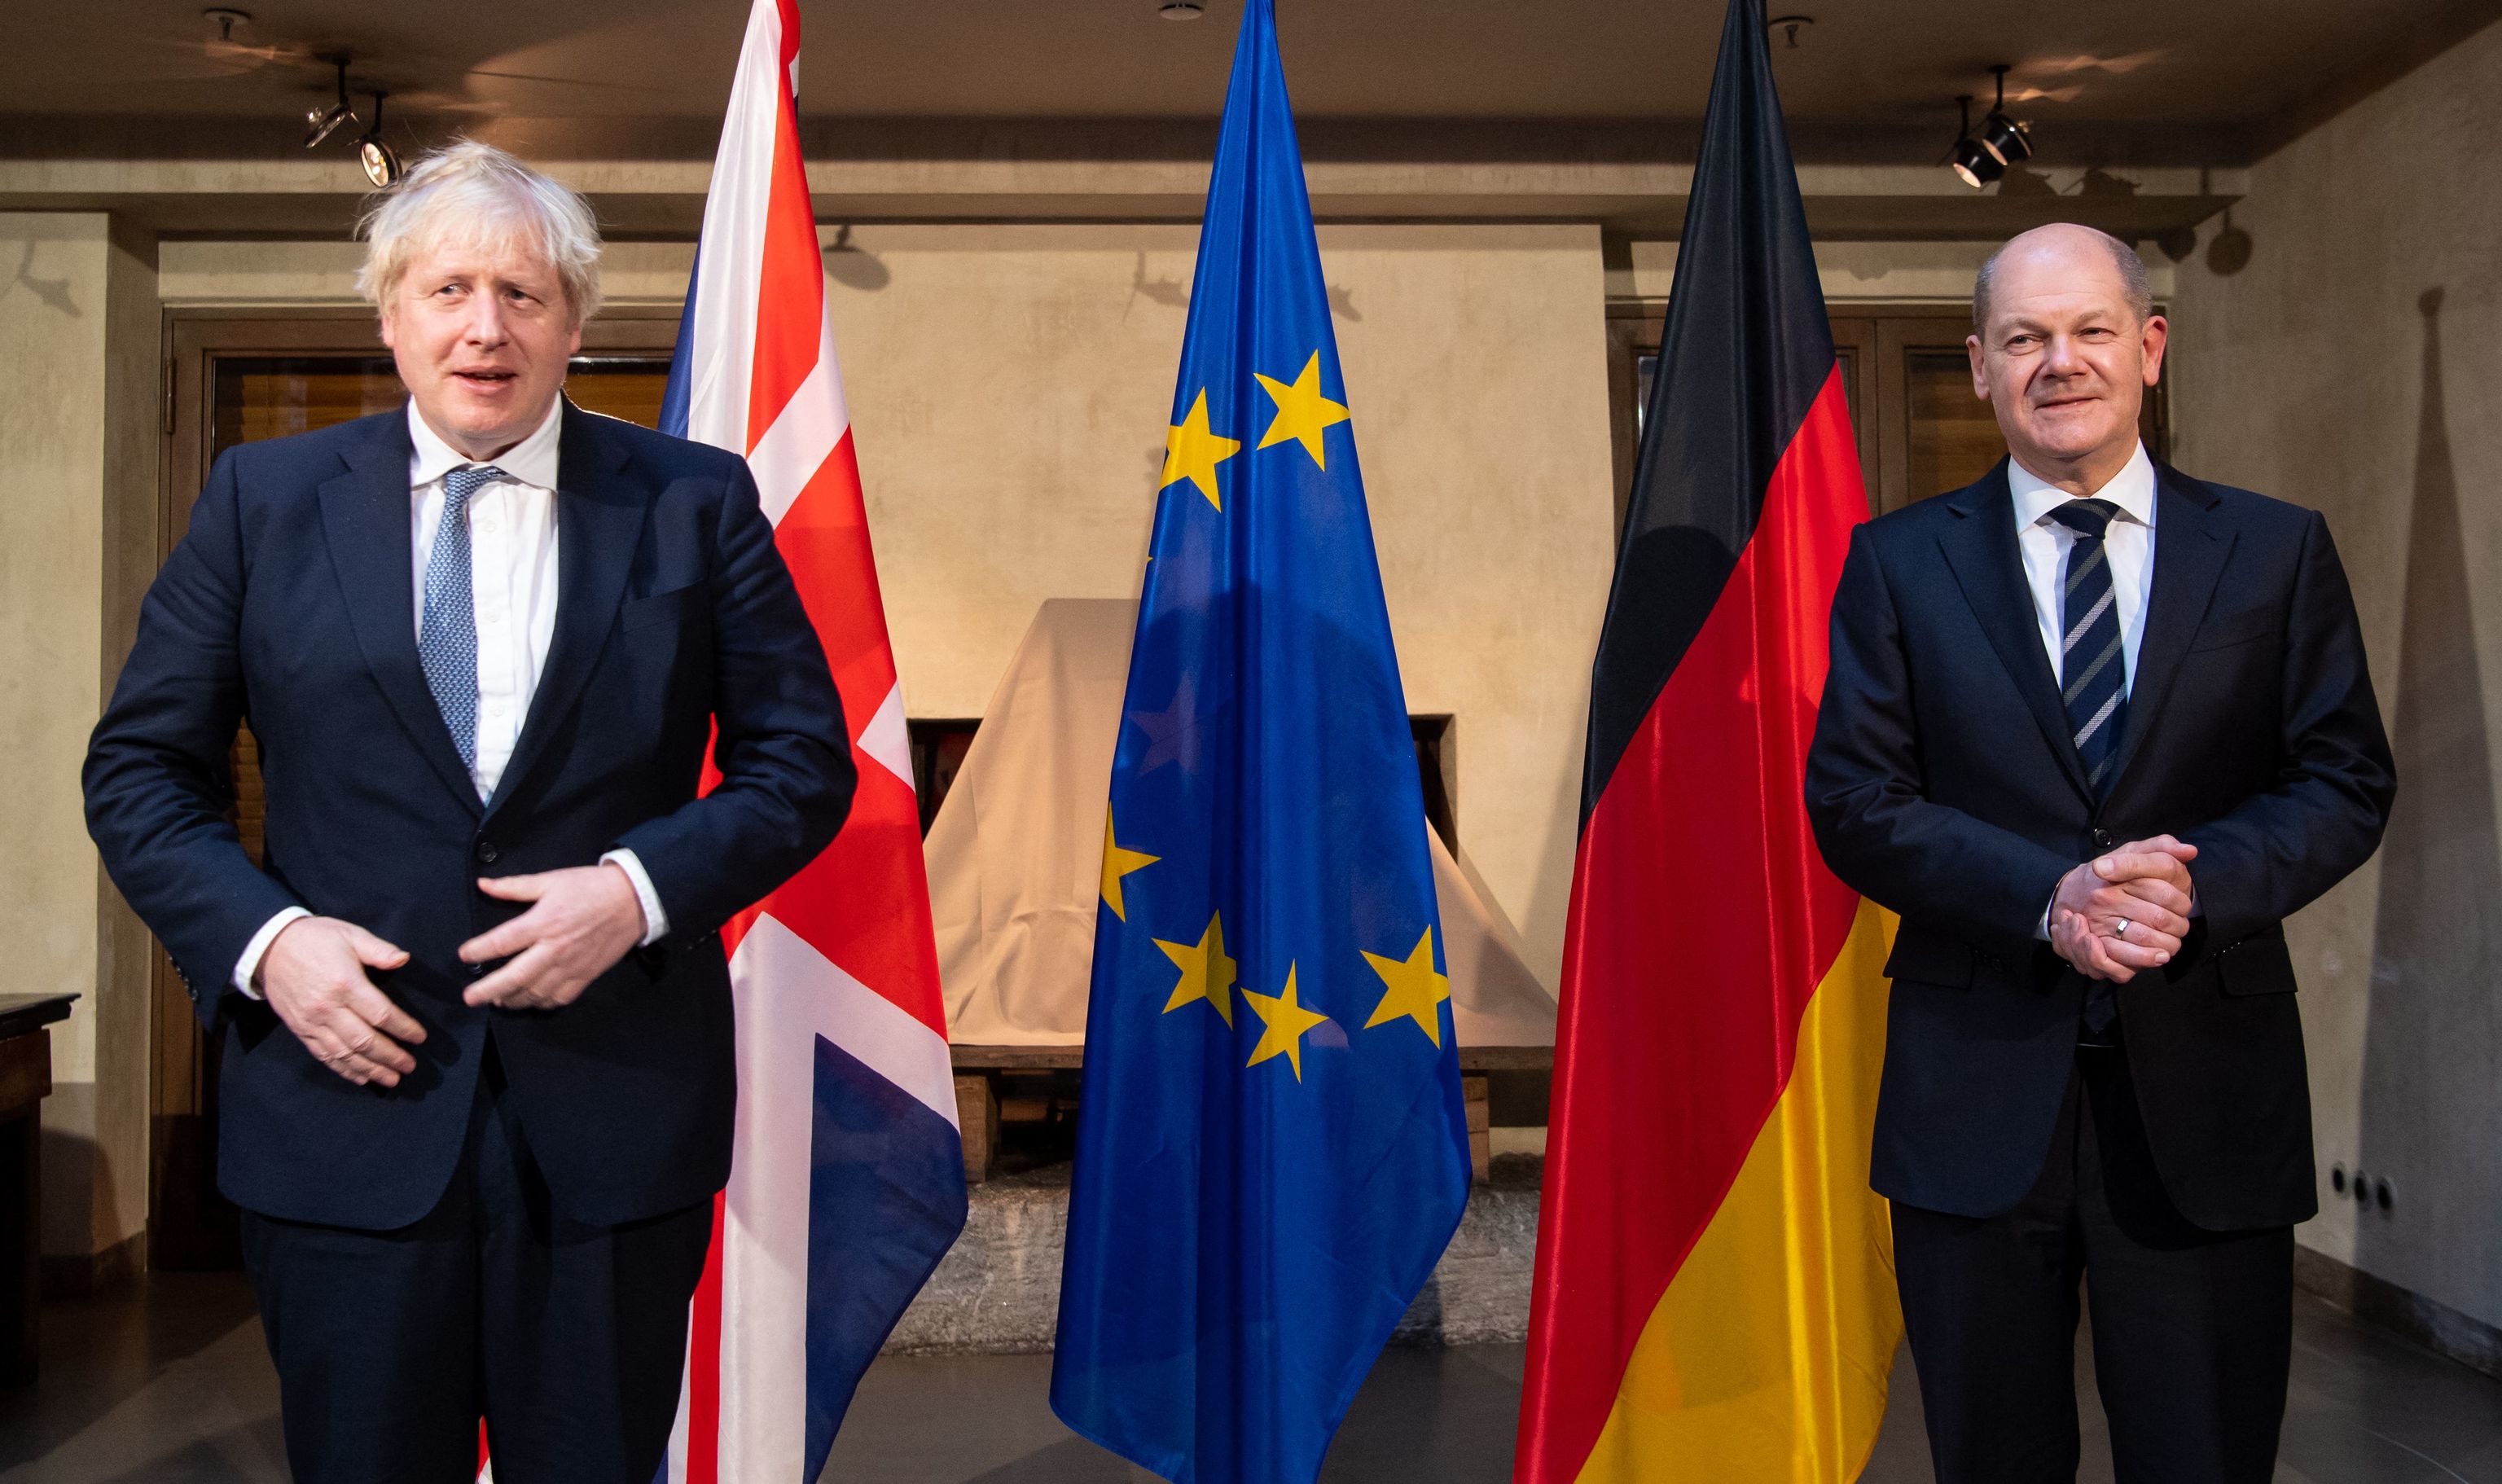 El canciller alemán Olaf Scholz (d) y el primer ministro británico Boris Johnson posan para una foto mientras se reúnen en la Conferencia de Seguridad de Múnich (MSC) en Múnich, sur de Alemania, el 19 de febrero de 2022.